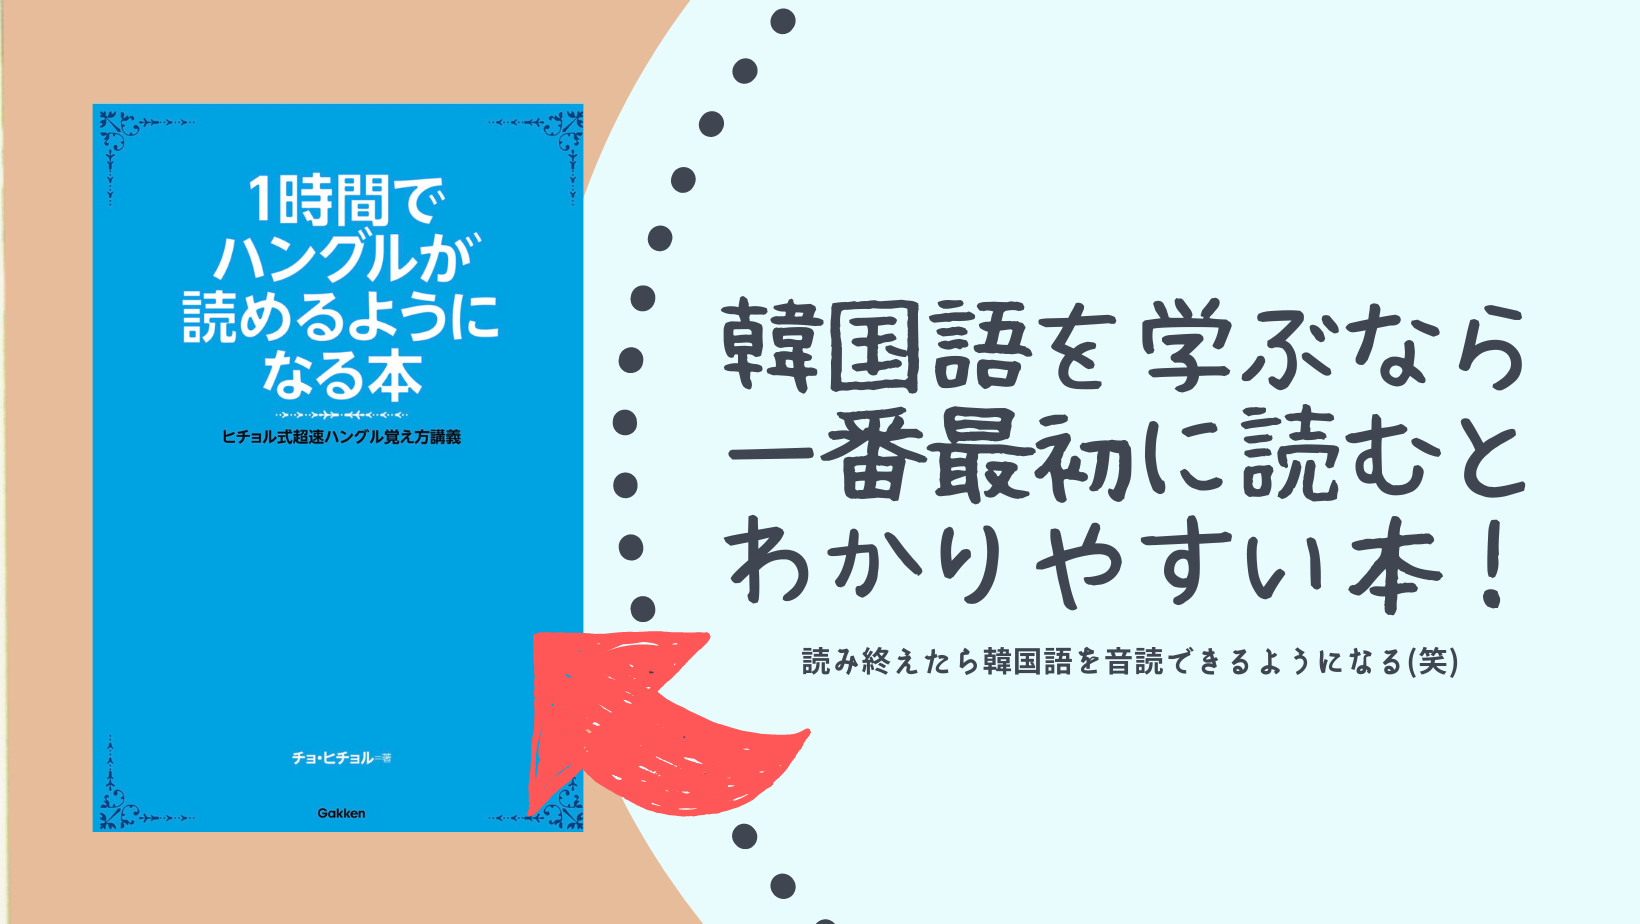 韓国語を学ぶなら一番最初に読むと分かりやすい本「1時間でハングルがよめるようになる本」